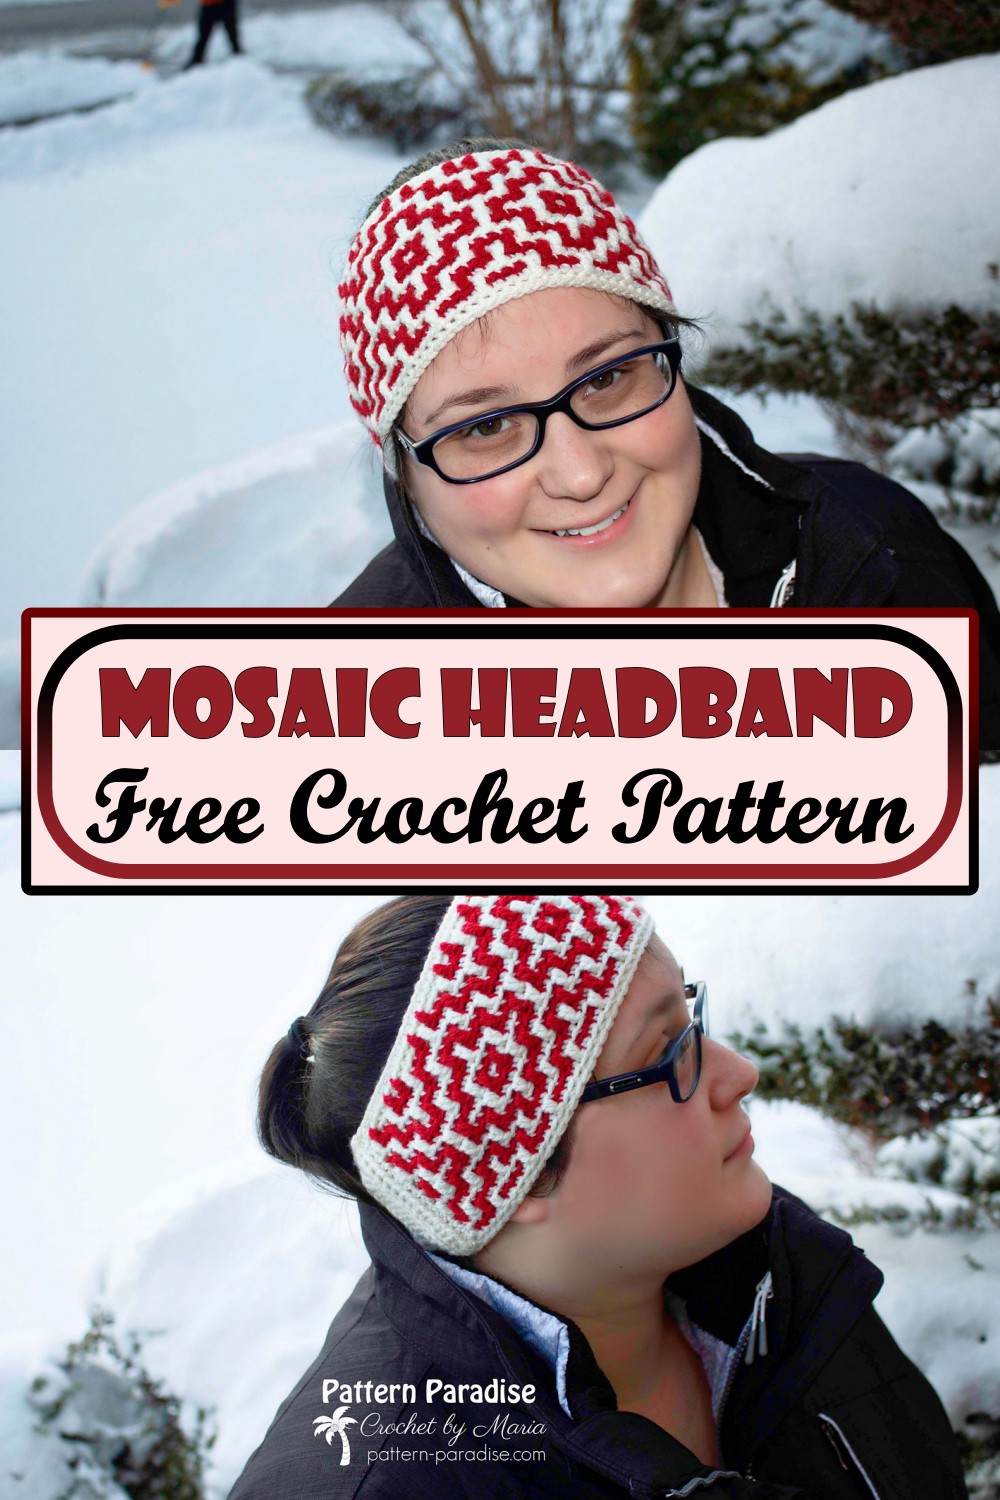 Mosaic Headband